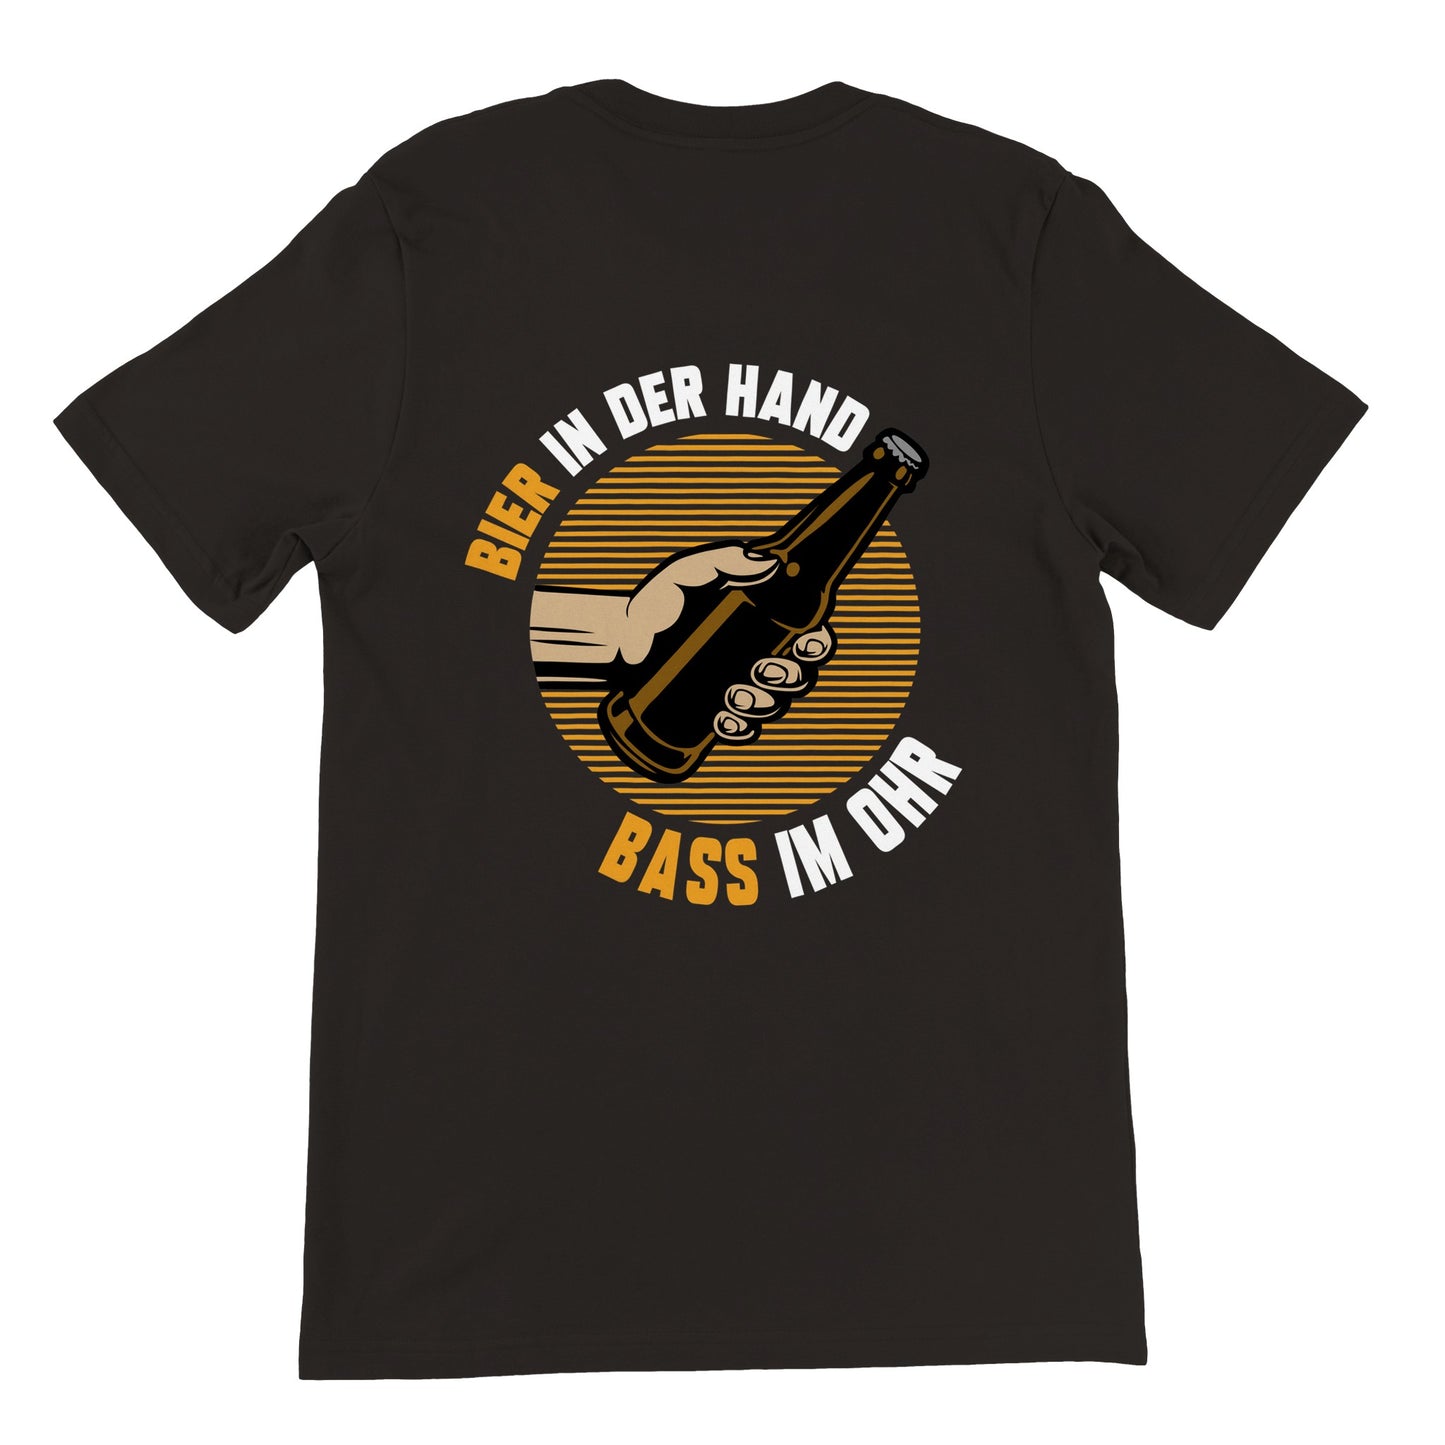 Bier in der Hand  Bass im Ohr - Premium Männer / Unisex T-Shirt mit Rundhalsausschnitt